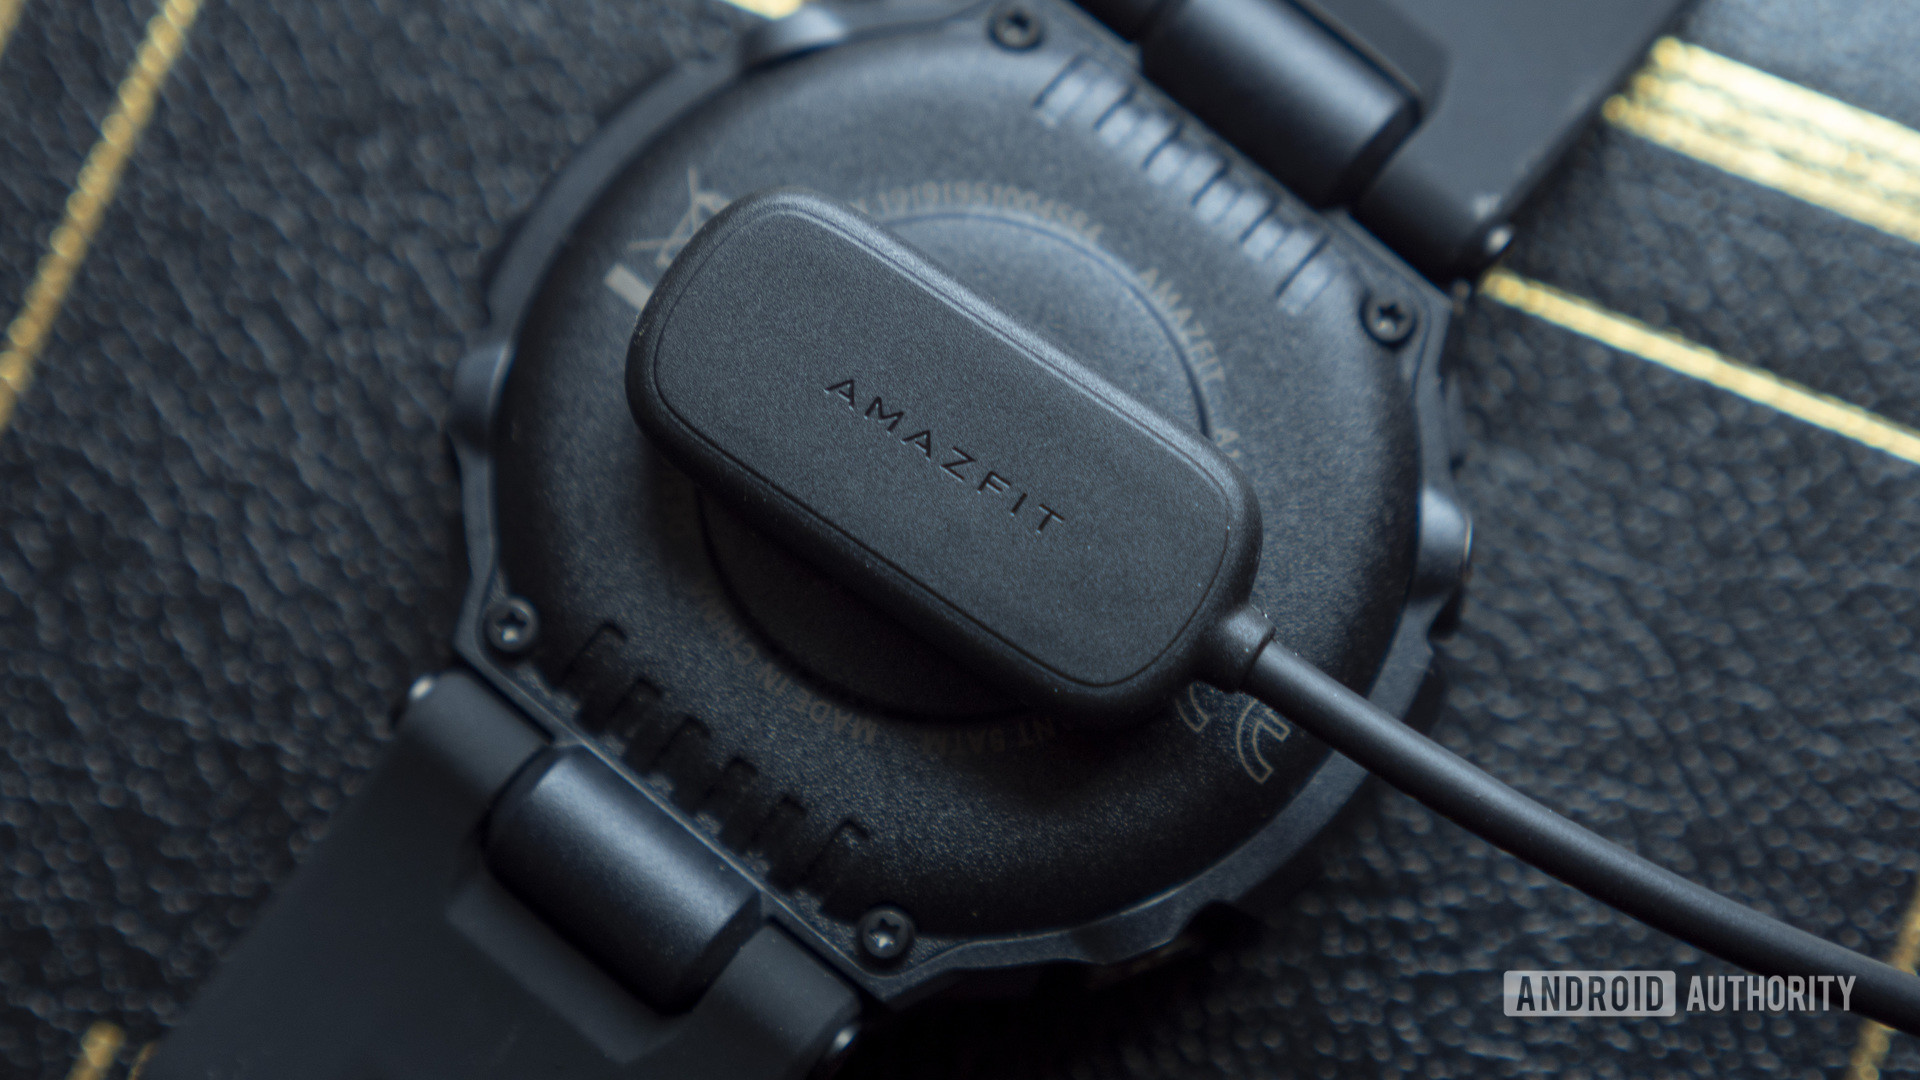 bateria del carregador de smartwatch huami amazfit t rex